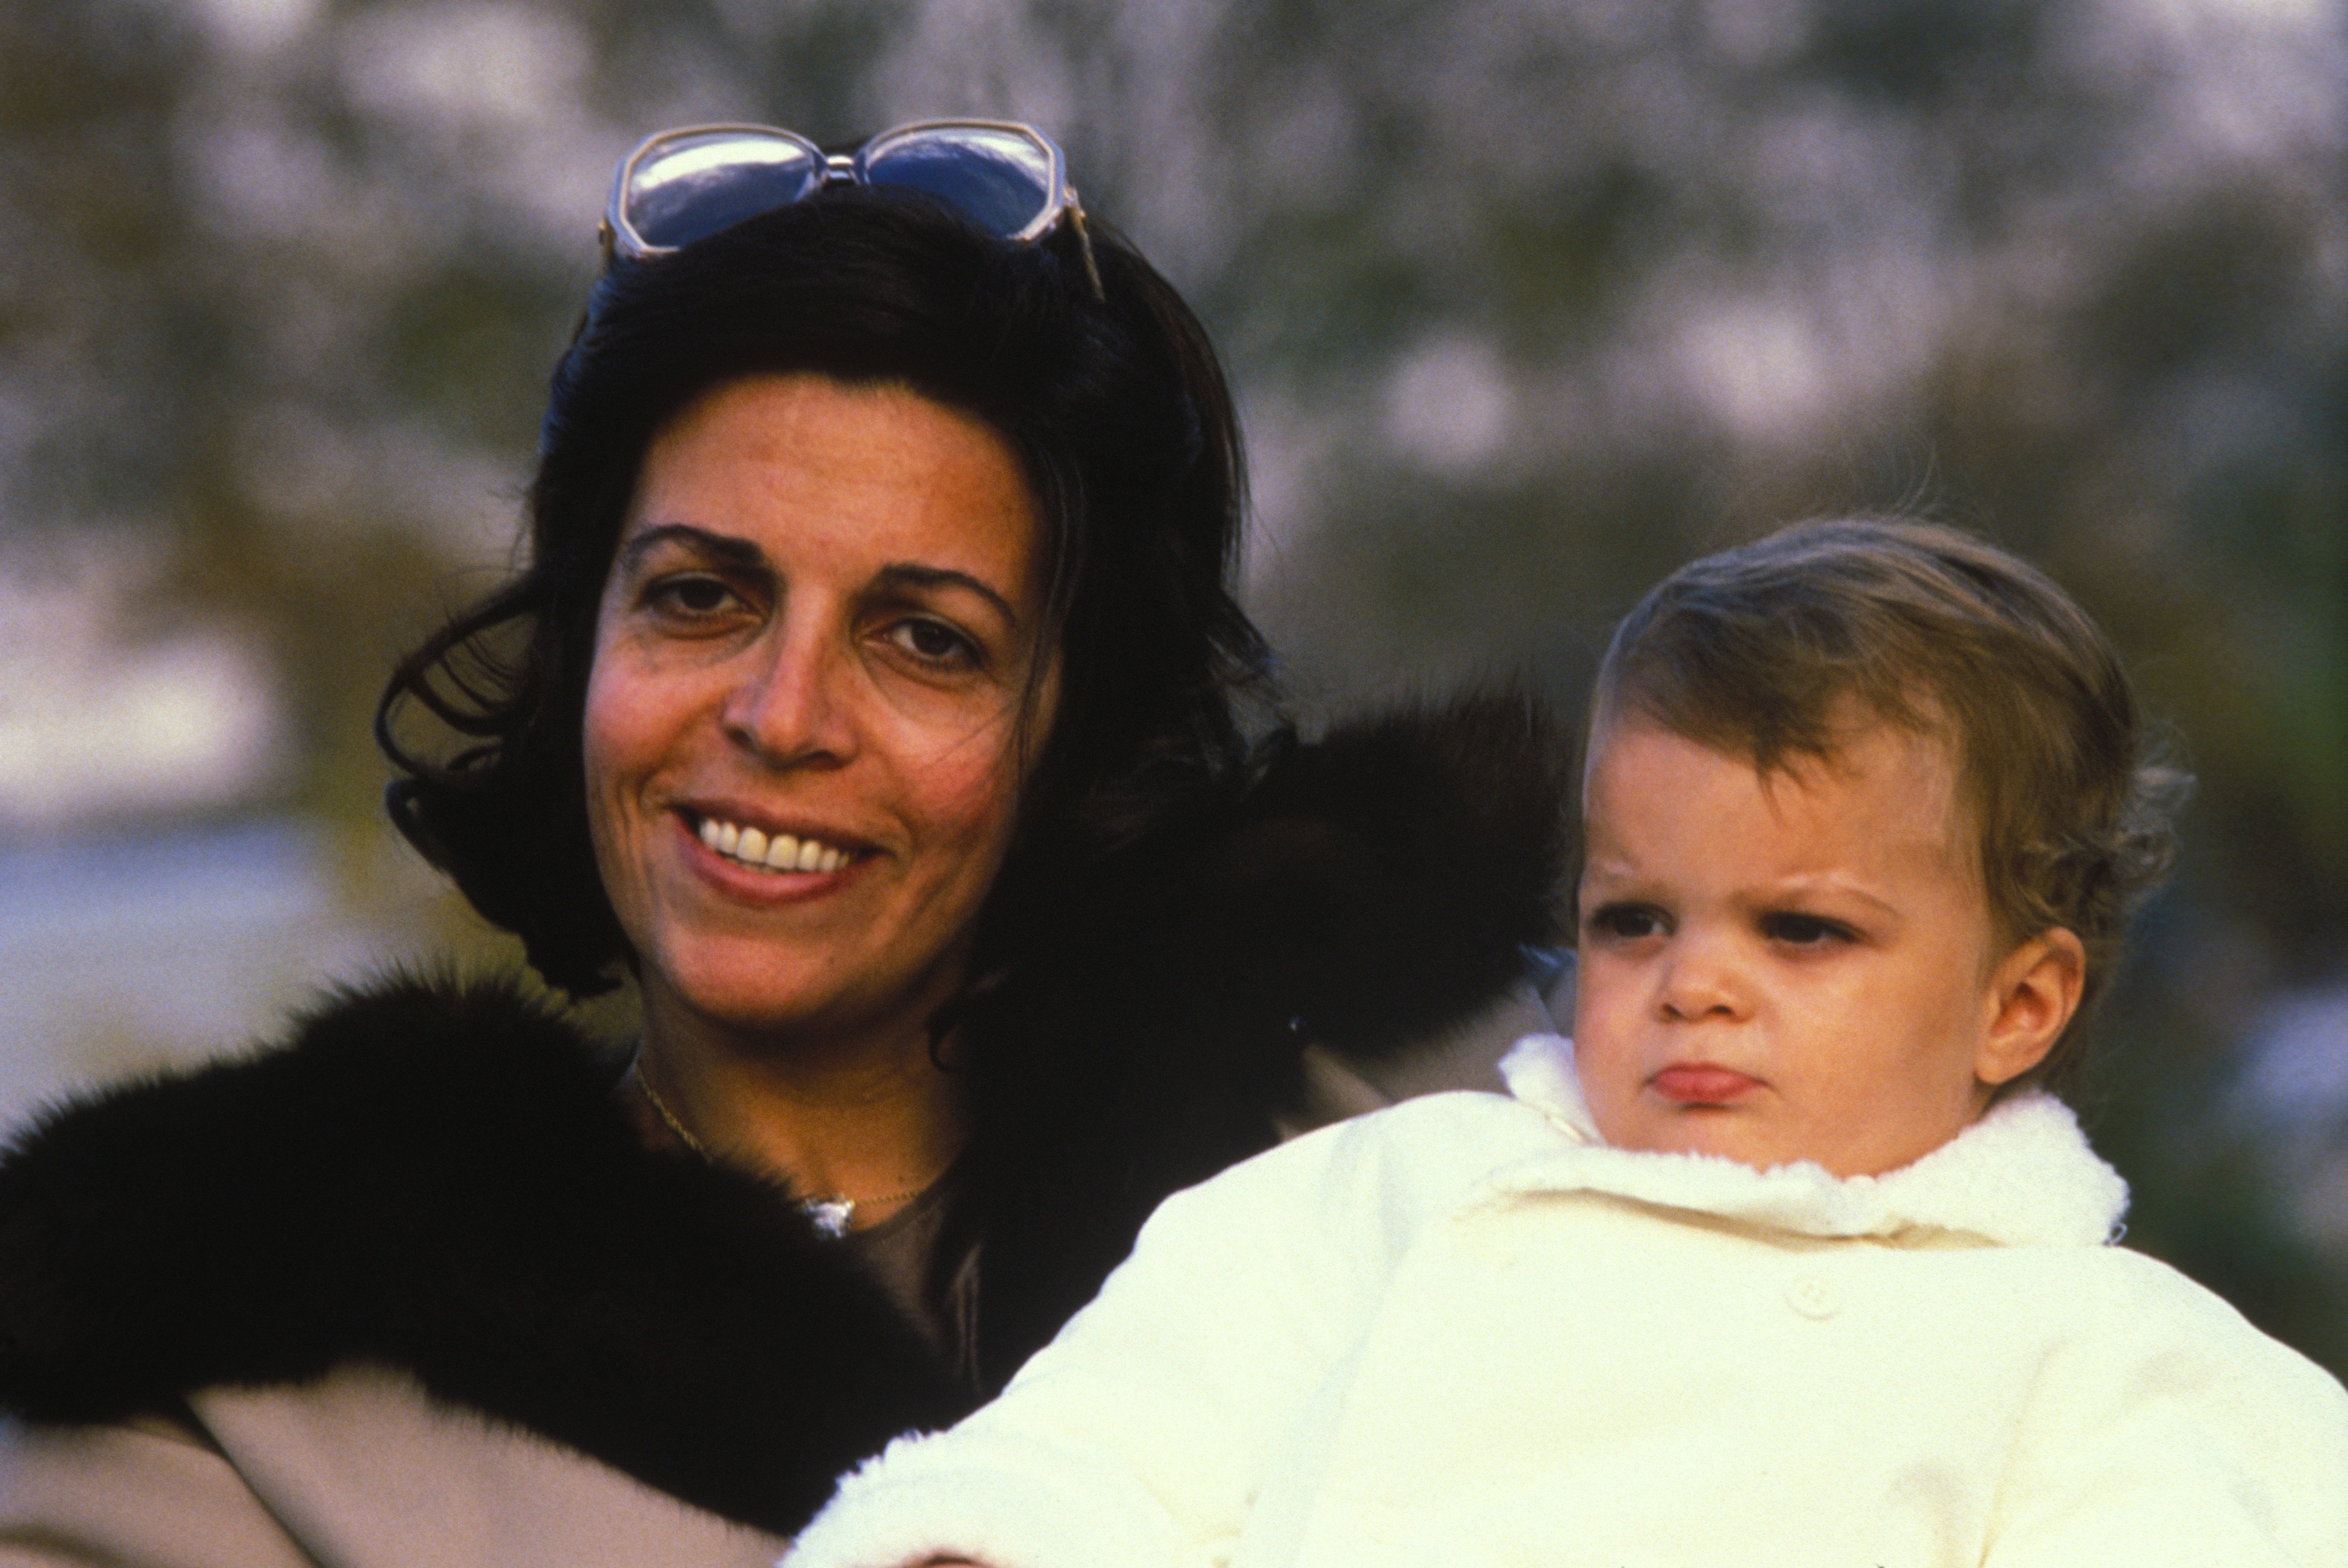 Christina Onassis con su hija Athina en sus brazos en foto de archivo, sin fecha. | Foto: Getty Images